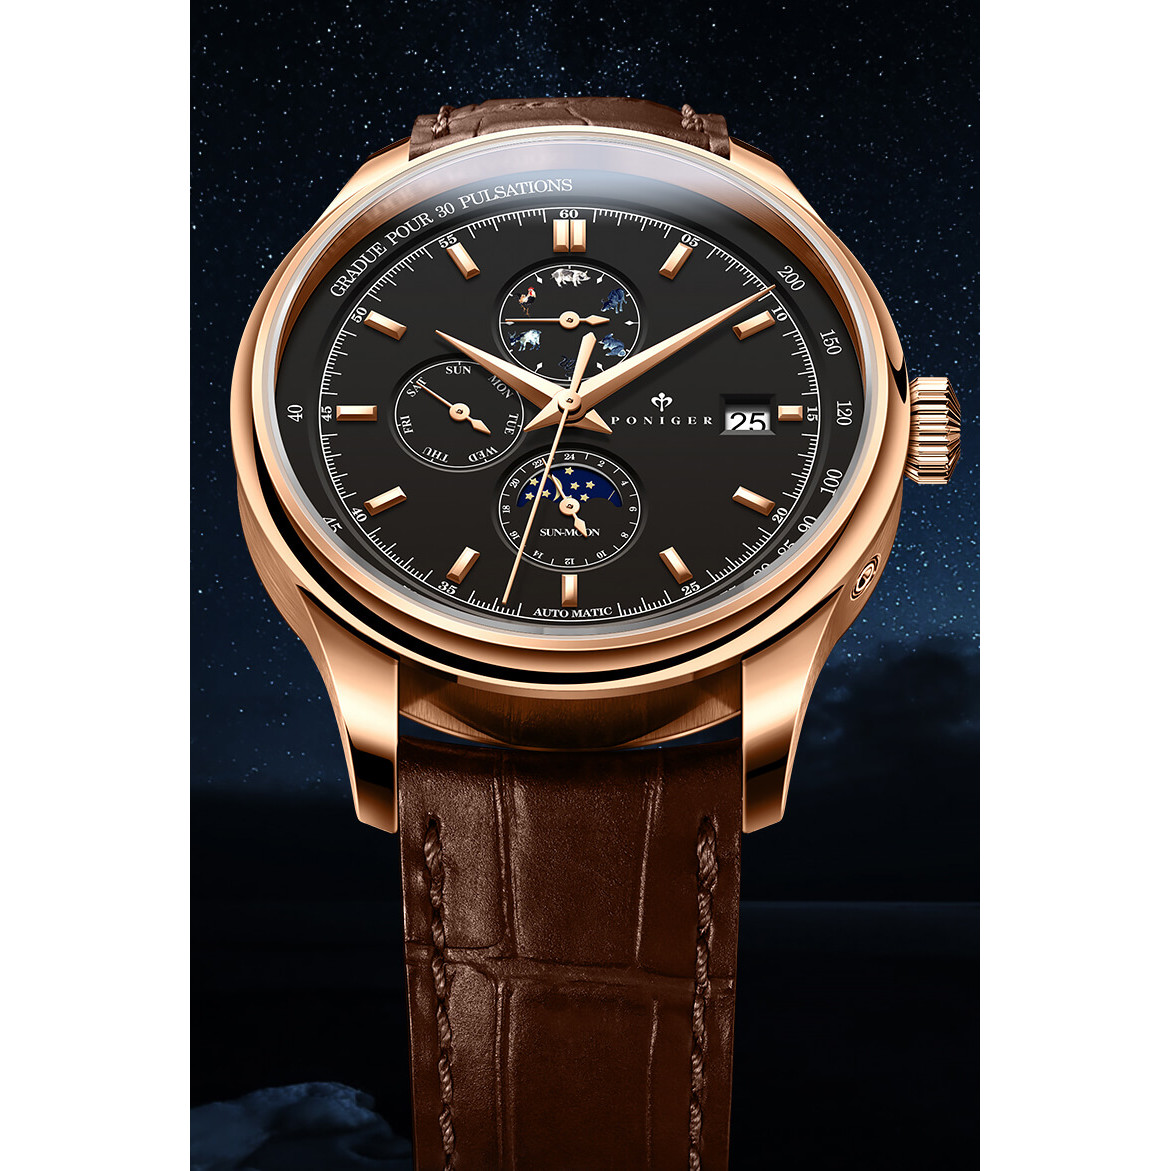 Đồng hồ nam Poniger P815-2 Chính hãng ,Kính sapphire nguyên khối ,chống xước,chống nước 50m,mặt đen vỏ vàng hồng dây da nâu